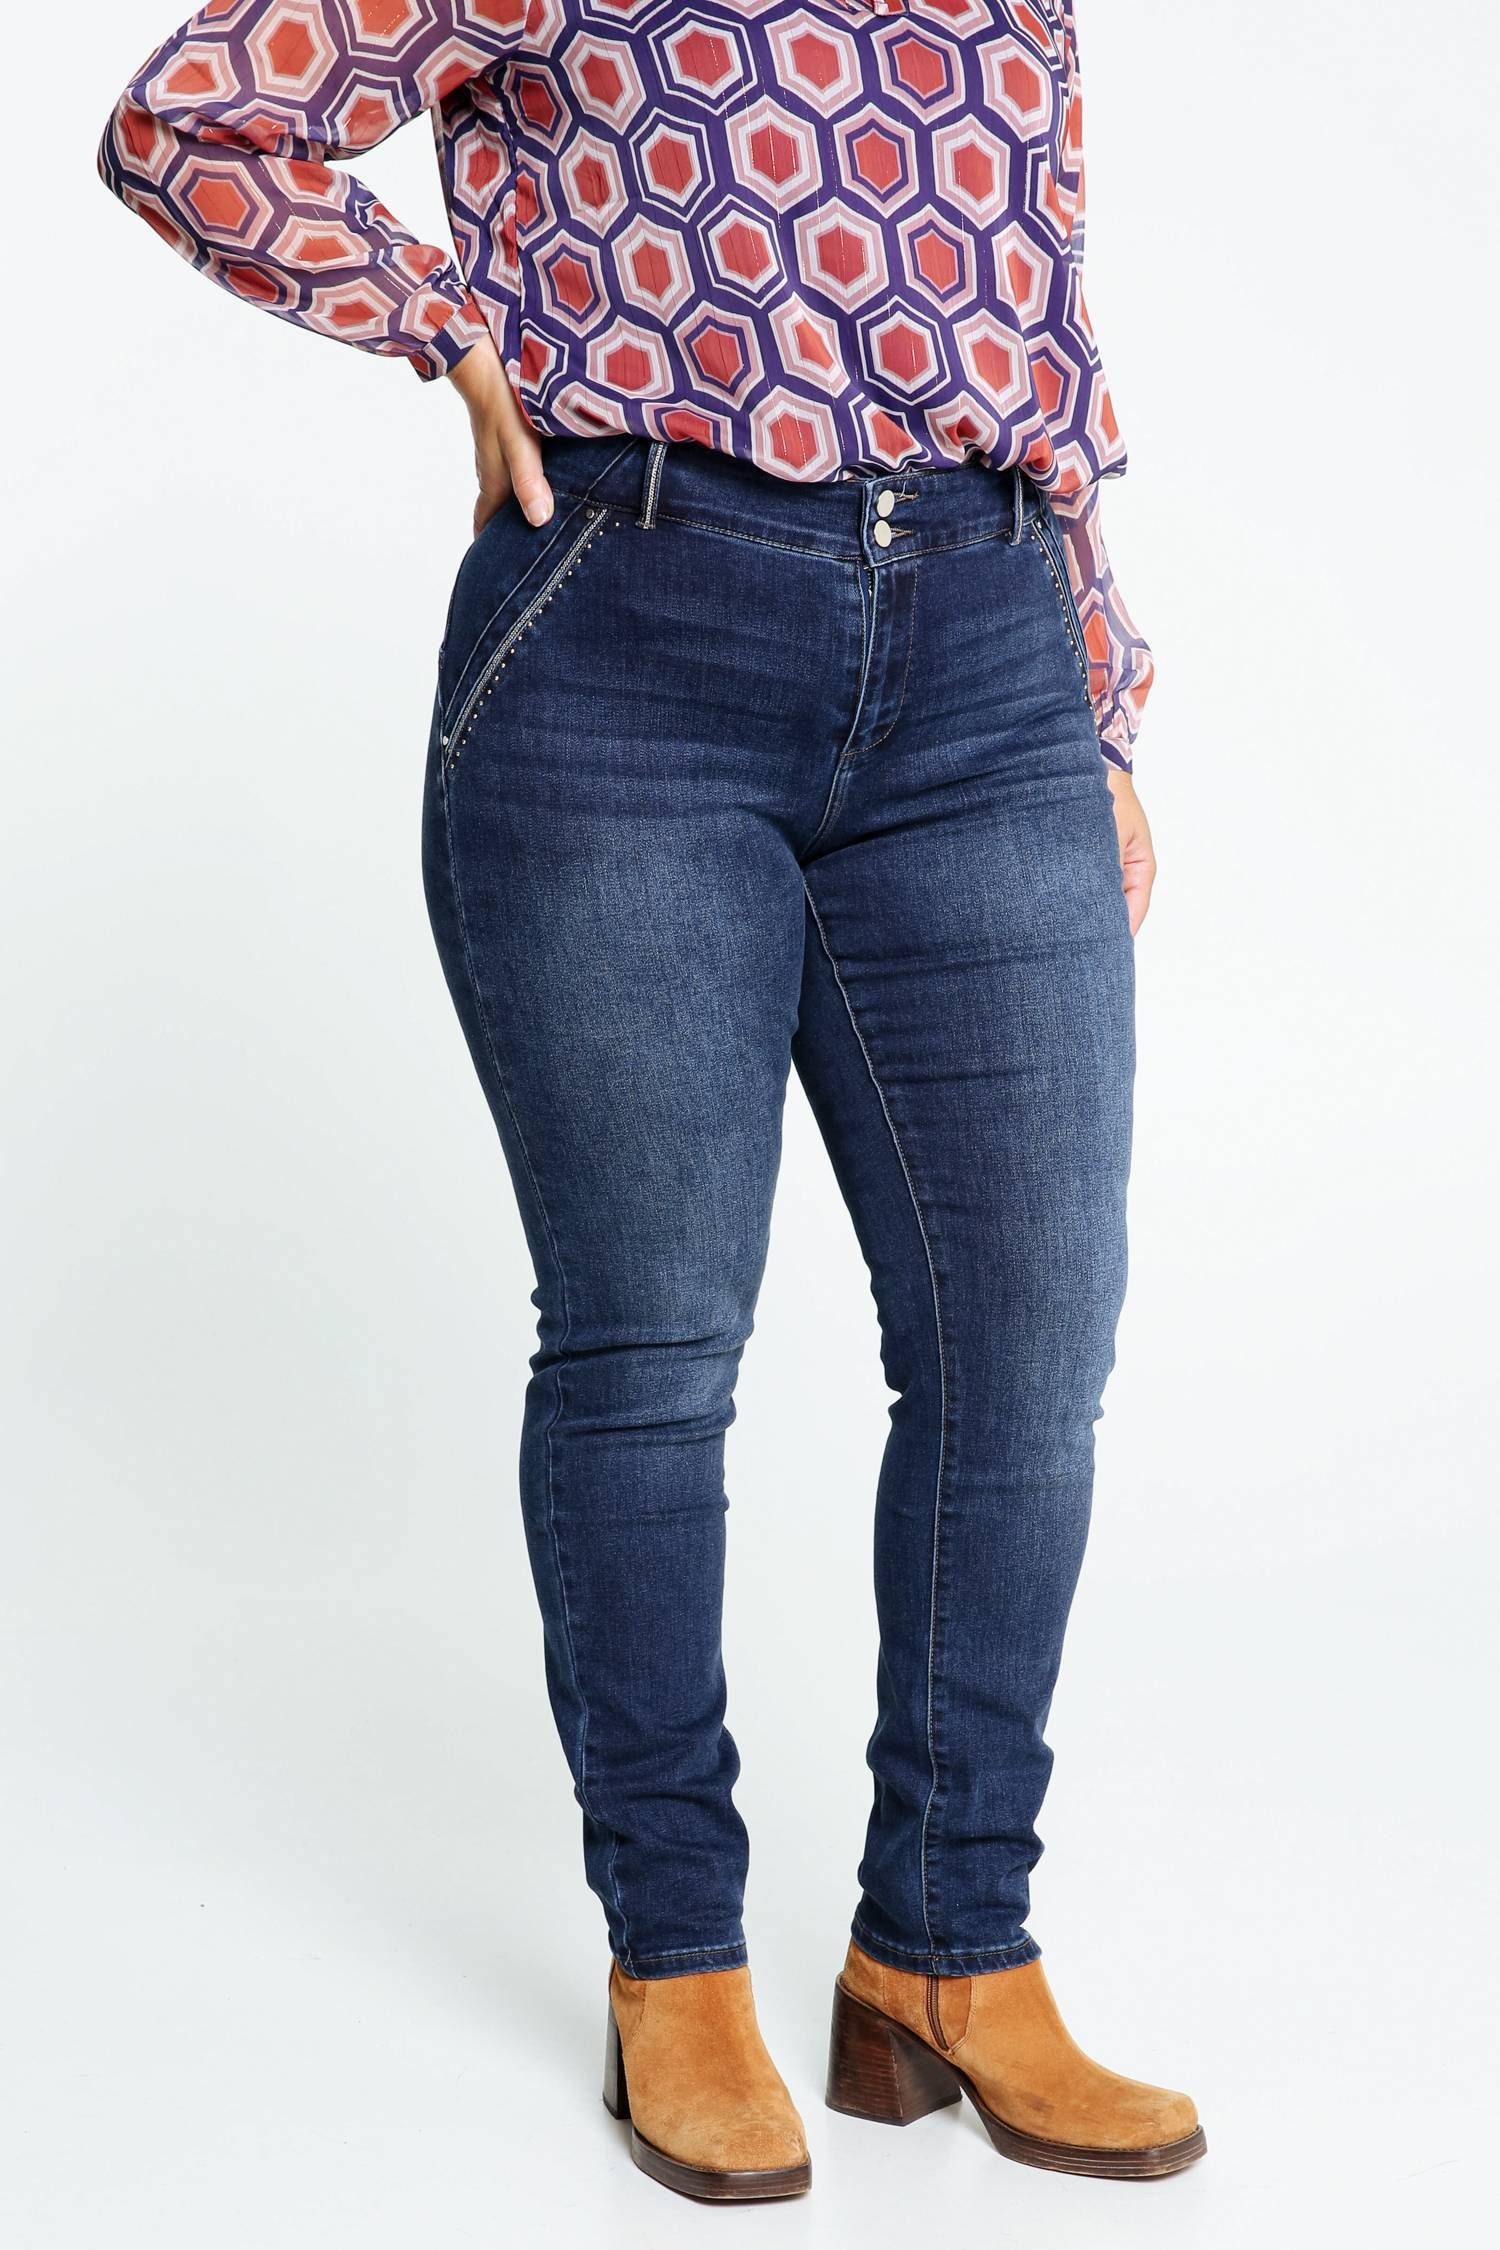 Paprika 5-Pocket-Jeans Push-Up Slim-Fit-Jeans Louise Mit L32